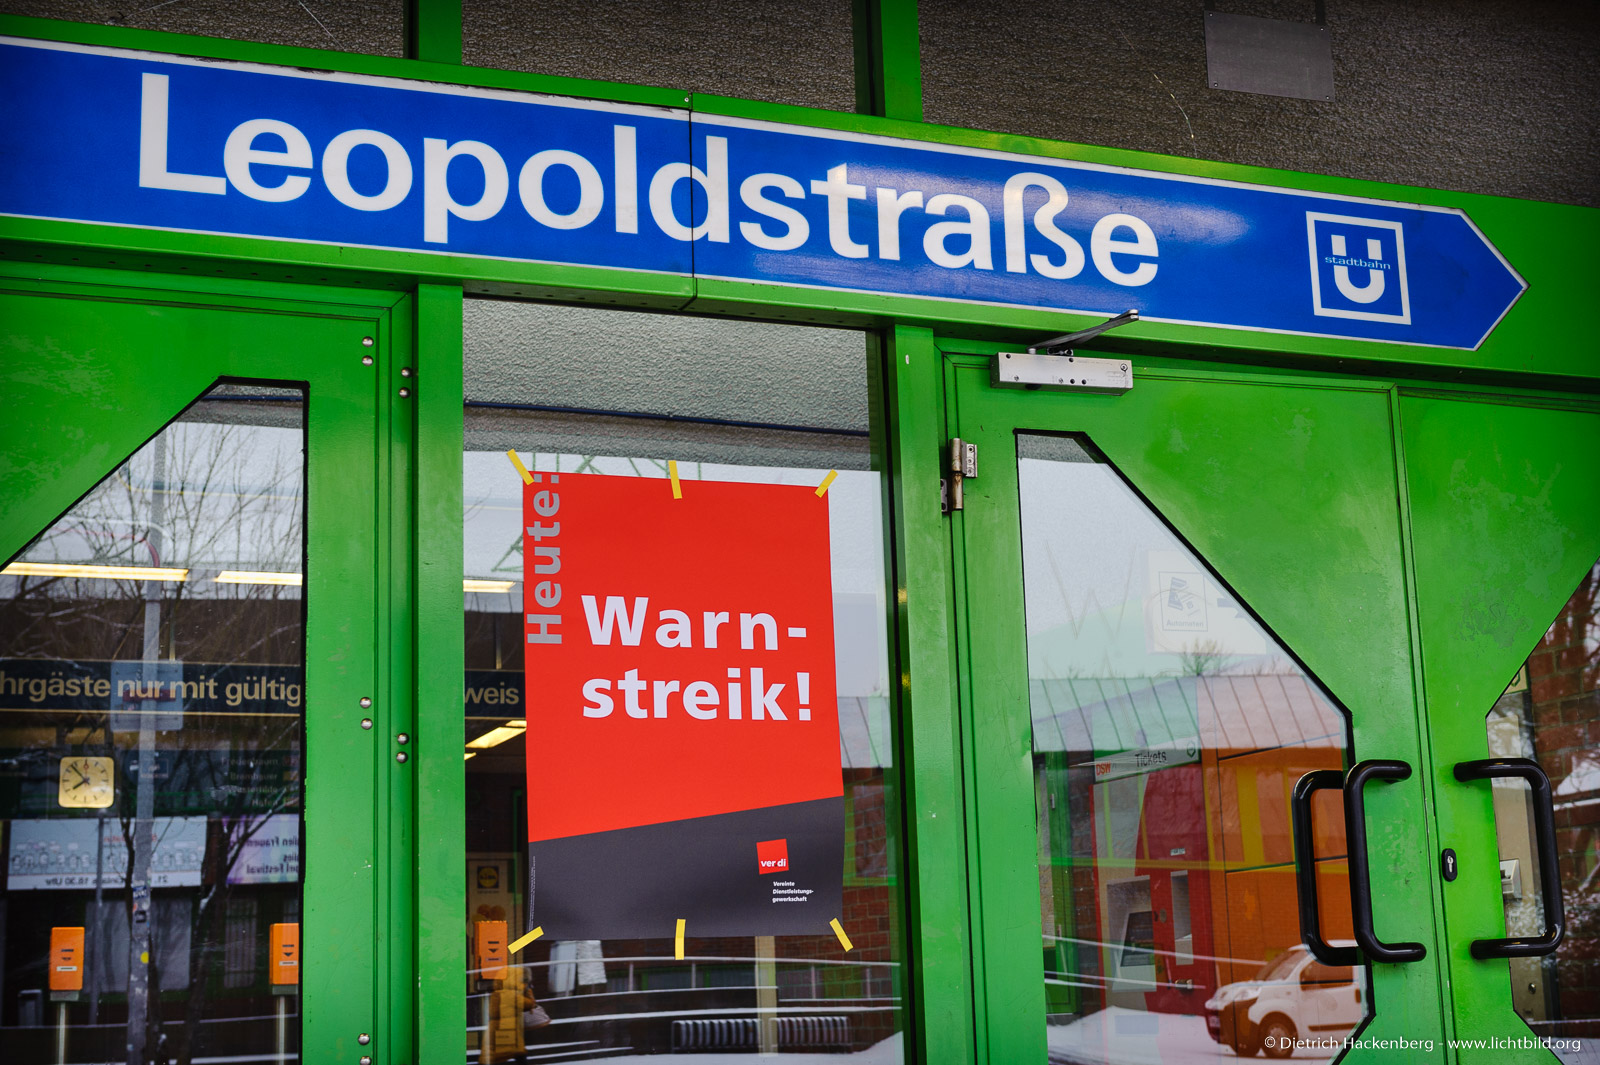 Warnstreik des öffentlichen Dienstes am 20.03.2018. Ubahn Leopoldstraße